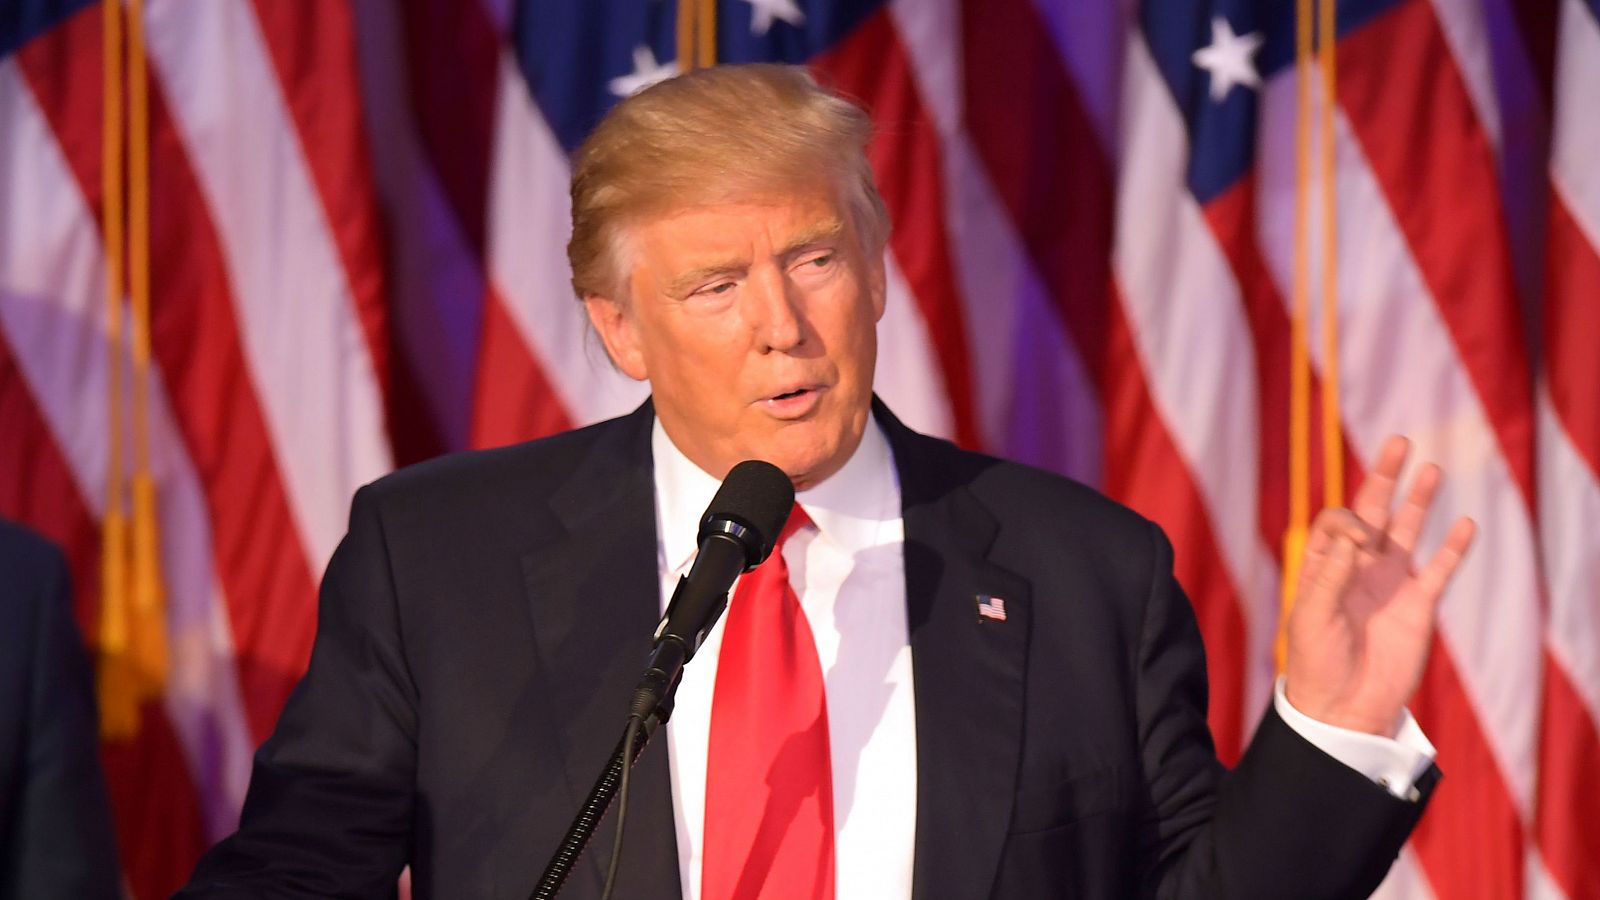  Las mañanas de RNE - Donald Trump llama a la unidad de todos los estadounidenses en su primer discurso como presidente - Escuchar ahora 